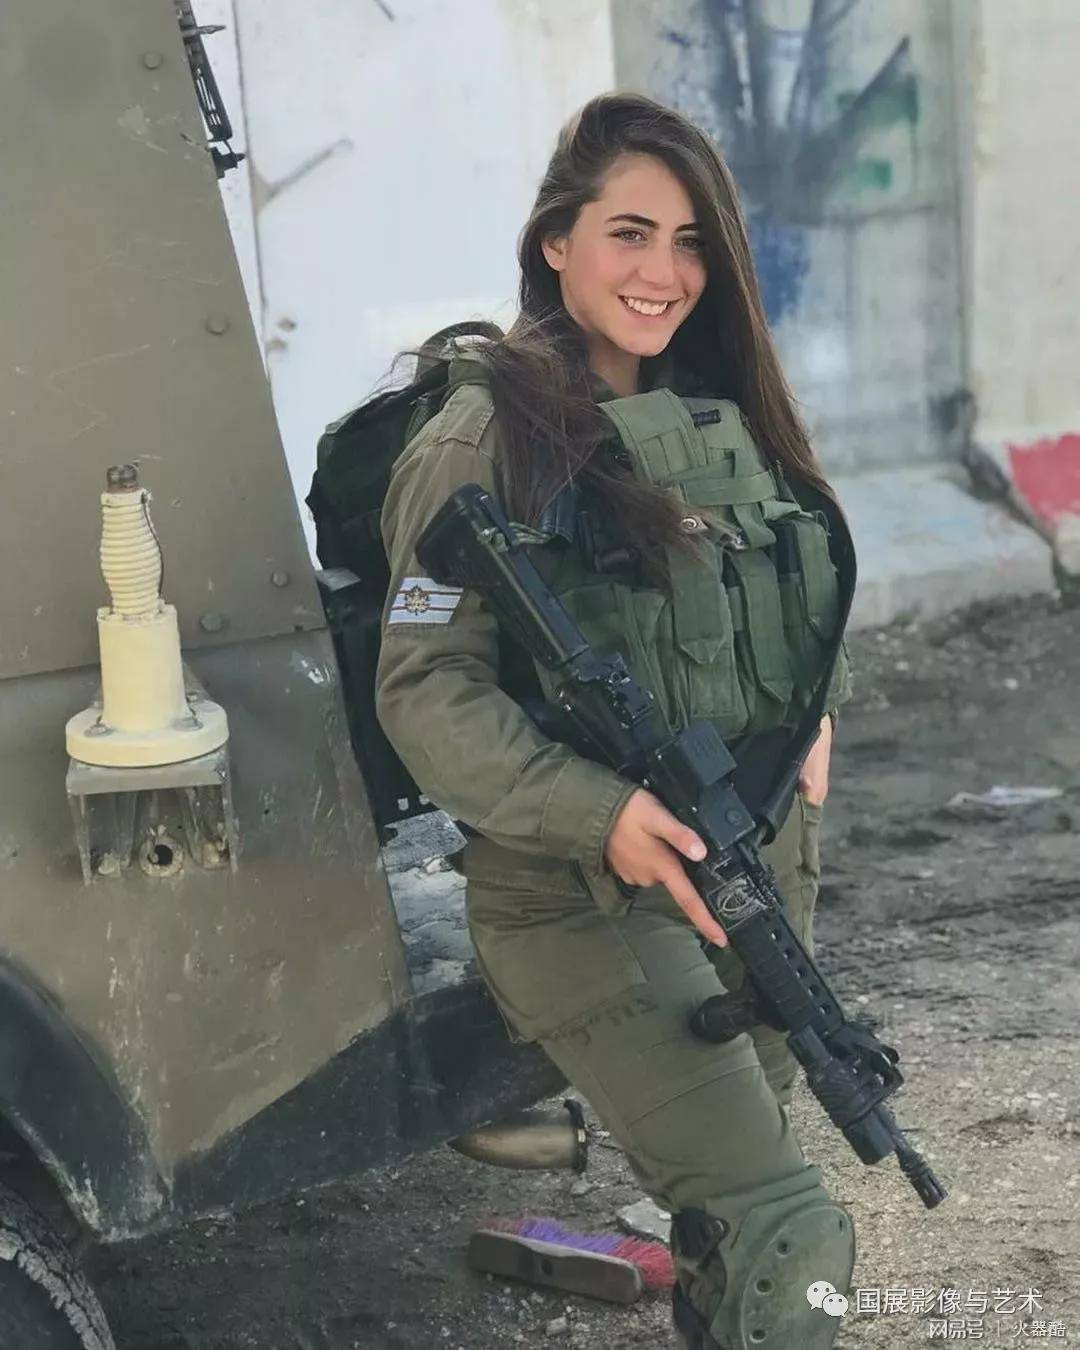 以色列的女兵，魔鬼身材，真惊艳！